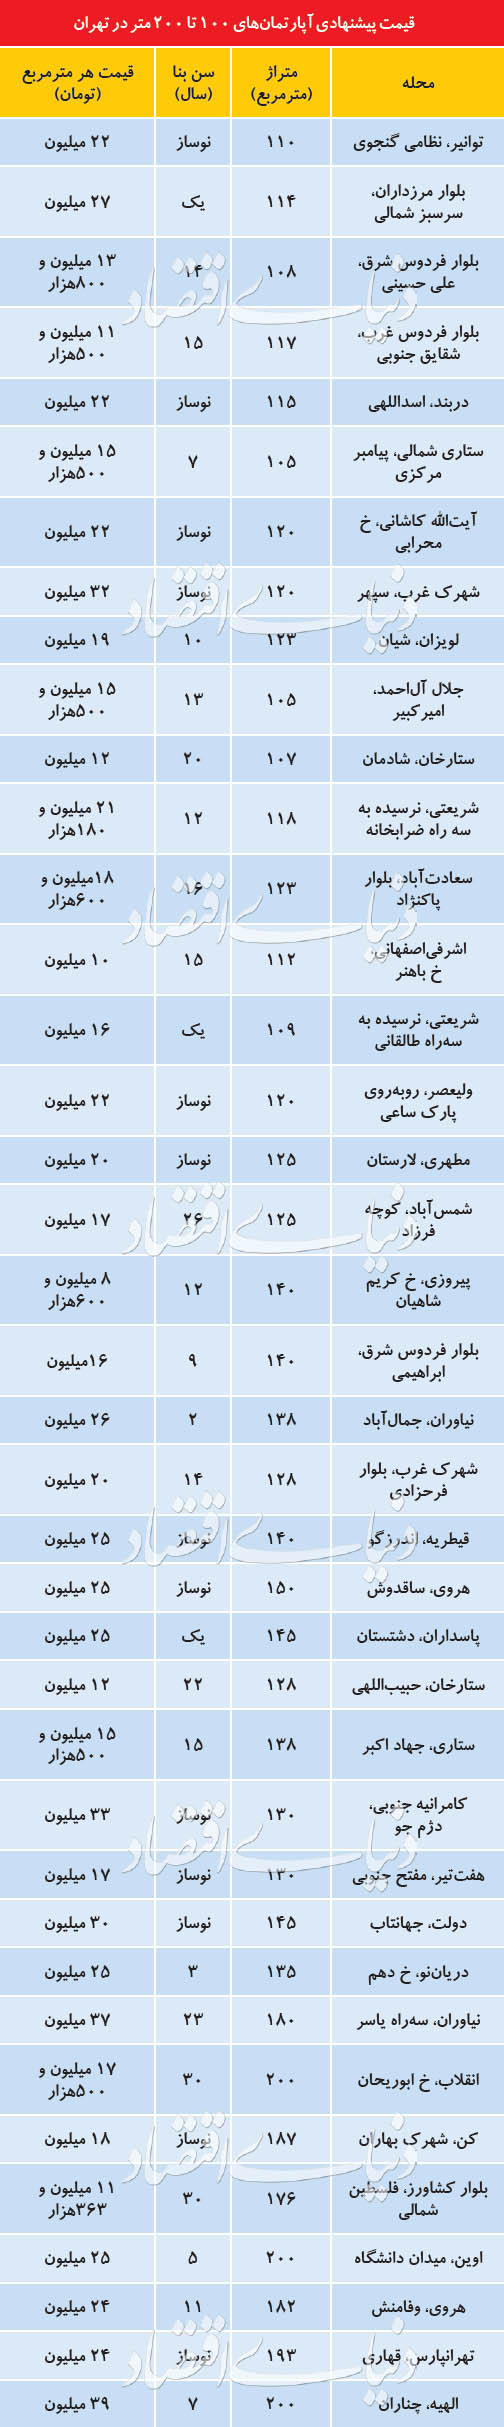 قیمت روز آپارتمان های پایتخت در 4 اردیبهشت 1398